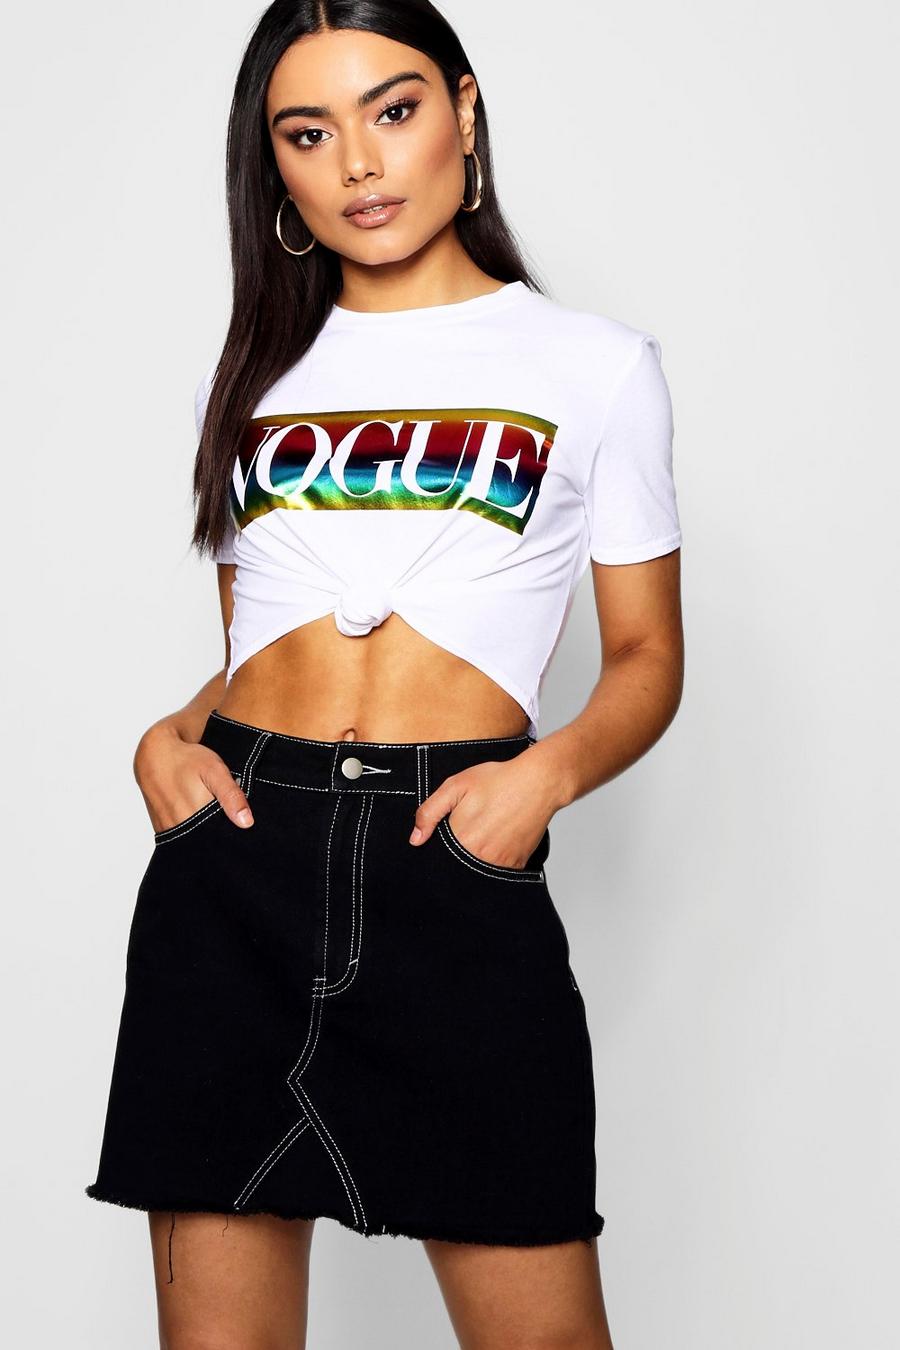 Camiseta corta con eslogan “Vogue” en arco iris metálico image number 1